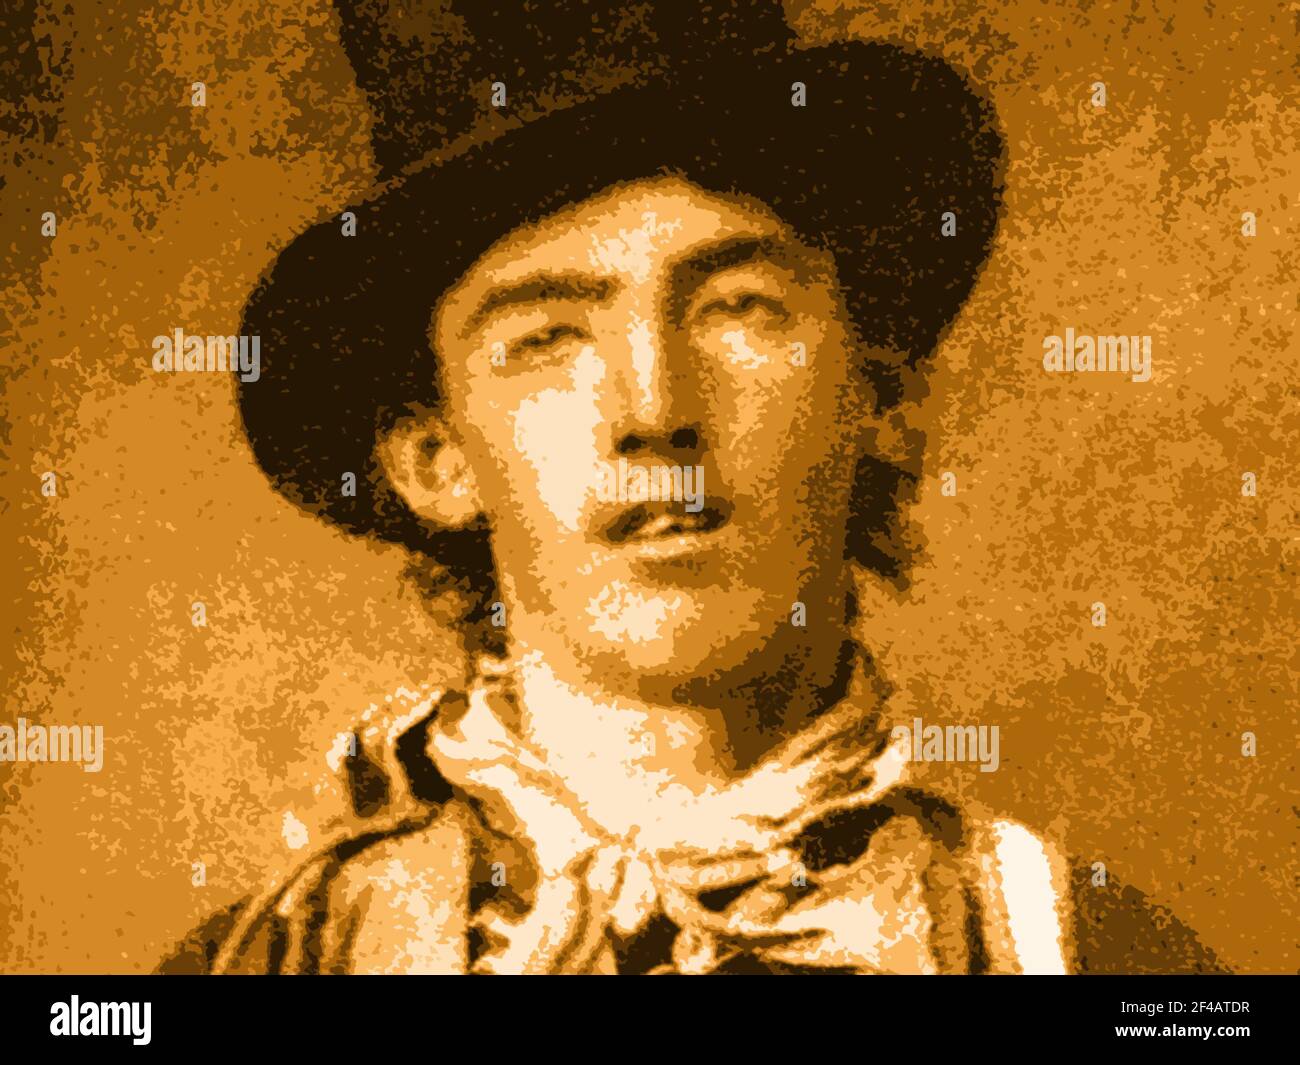 Un ferrotype di circa 1880 William Bonney, alias Billy the Kid, alterato con un filtro effetti speciali di Photoshop. Foto Stock